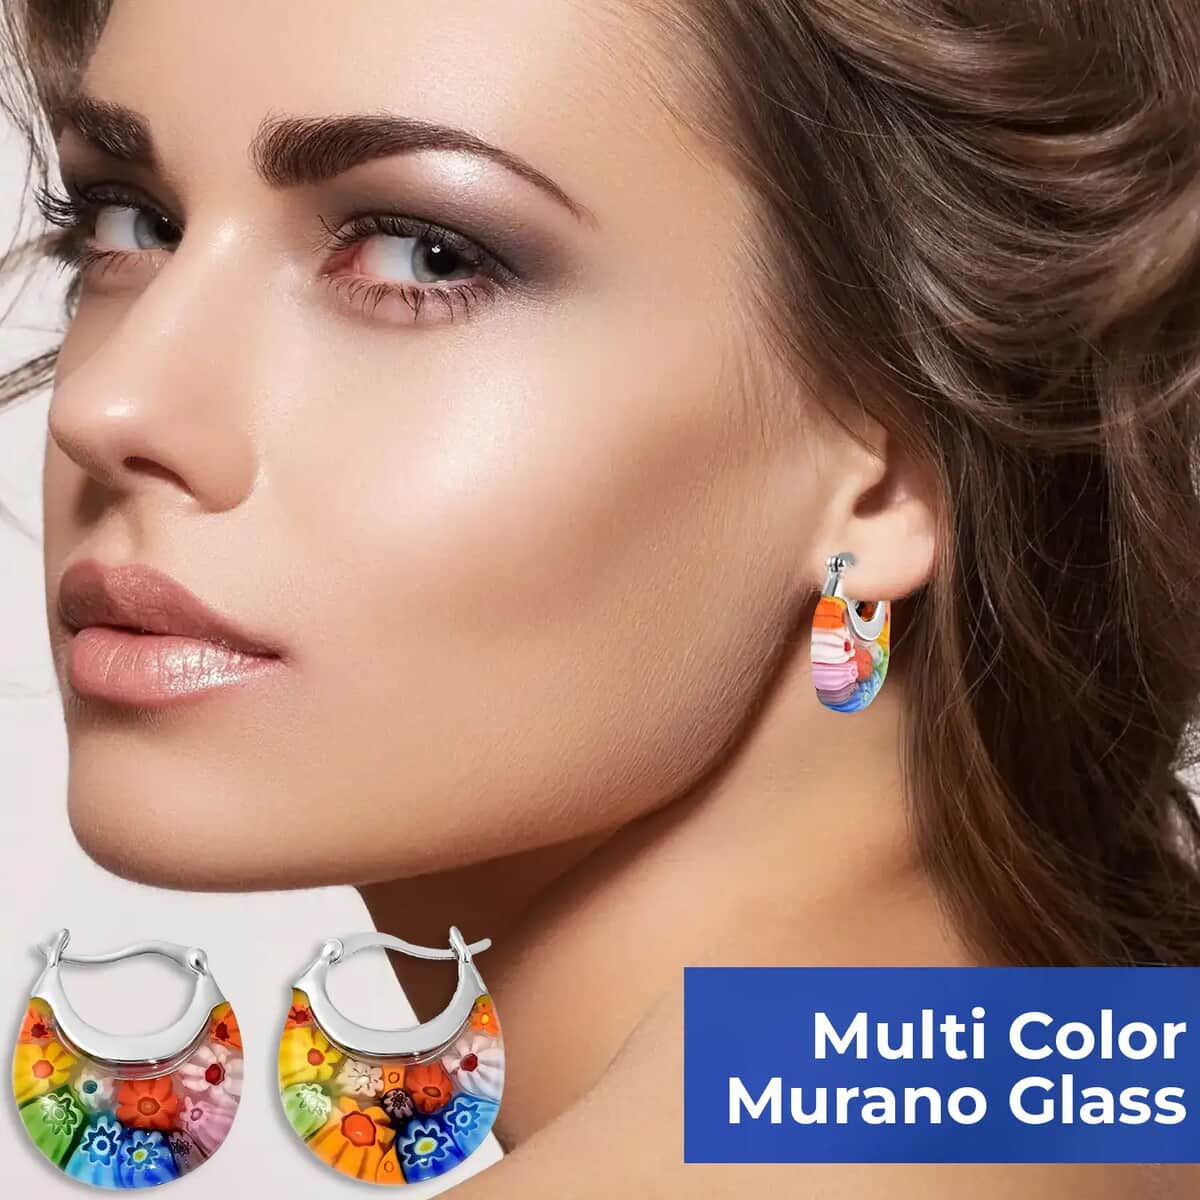 Multi Color Murano Style Basket Hoop Earrings in Stainless Steel, Floral Millefiori Earrings, Sweatproof Hypoallergenic Earrings image number 3